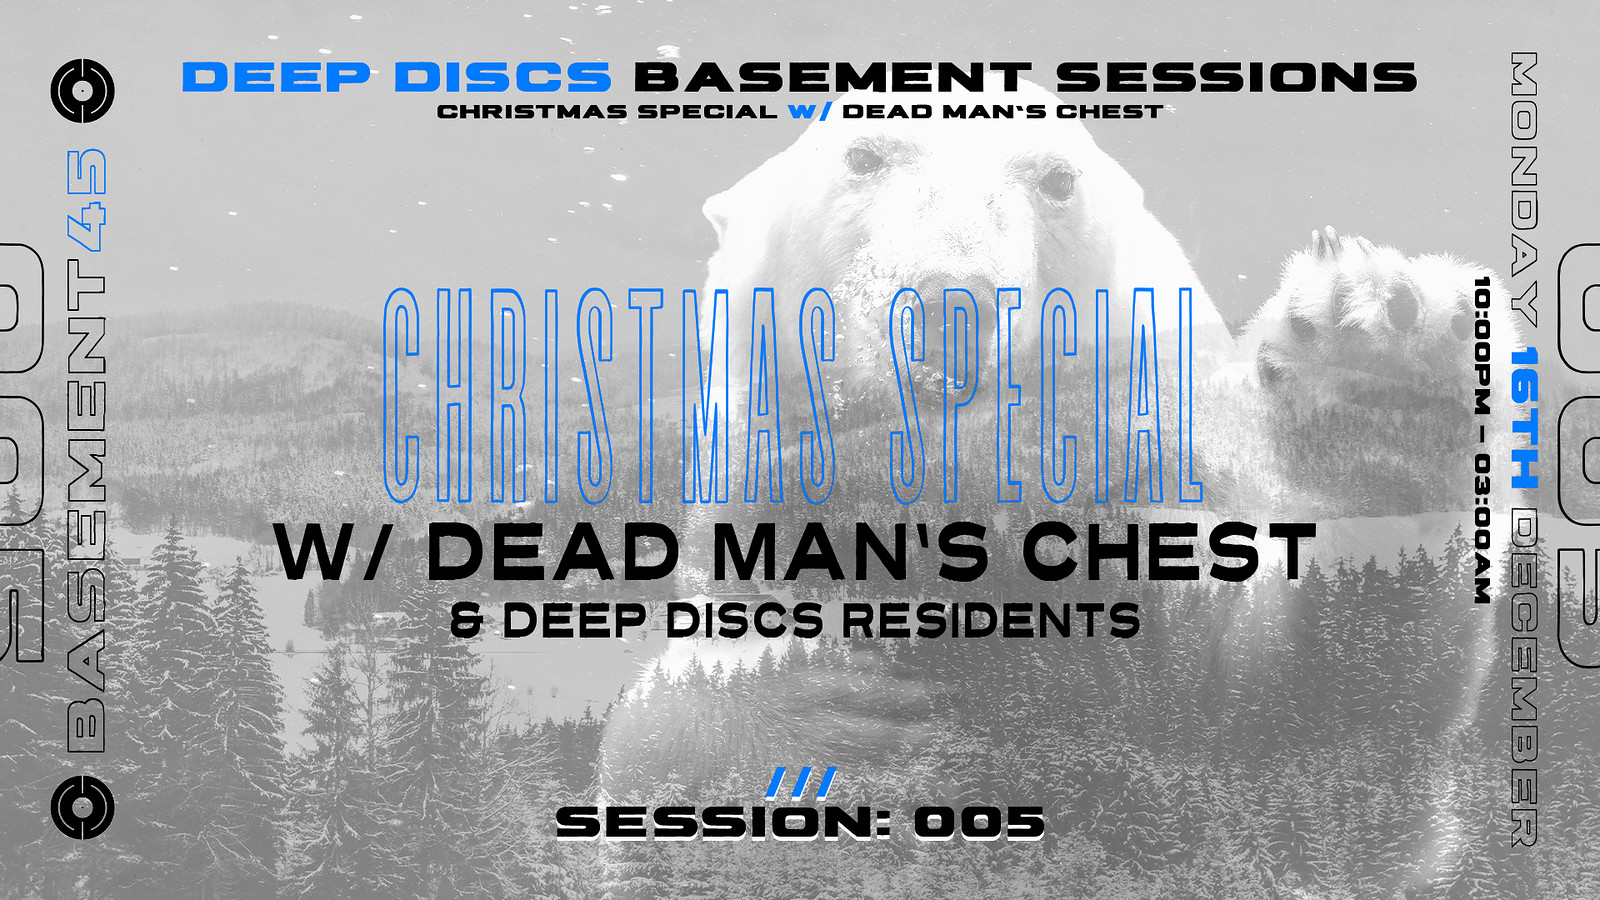 Deep Discs Basement Sessions 005: W/ DMC at Basement 45